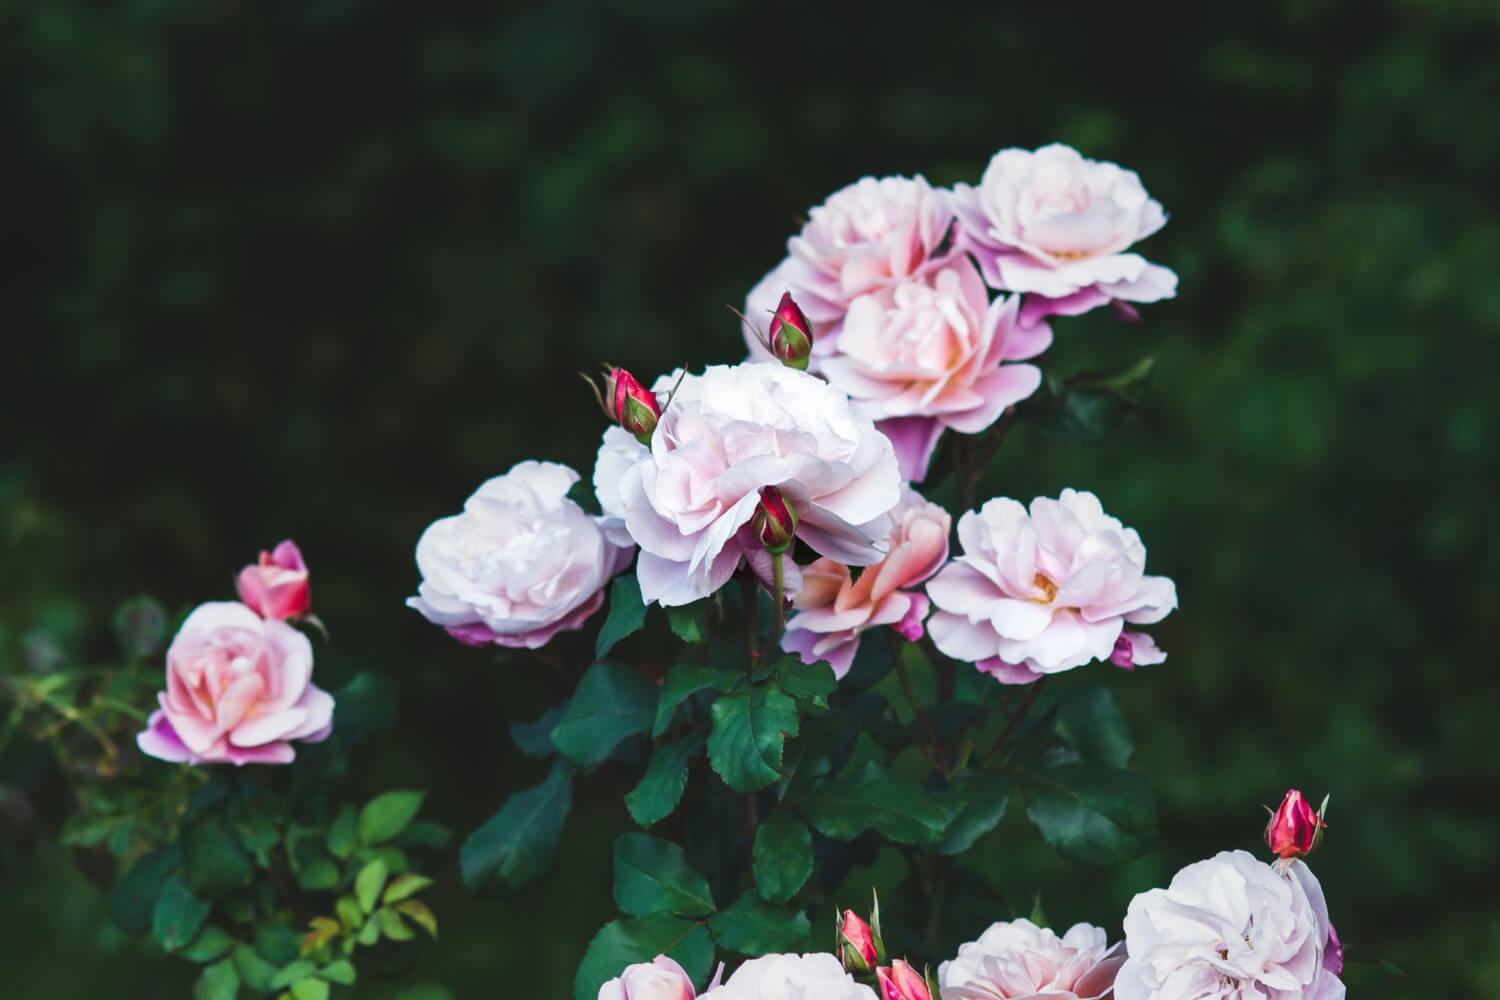  Comment faire un jardin romantique à l’anglaise ?